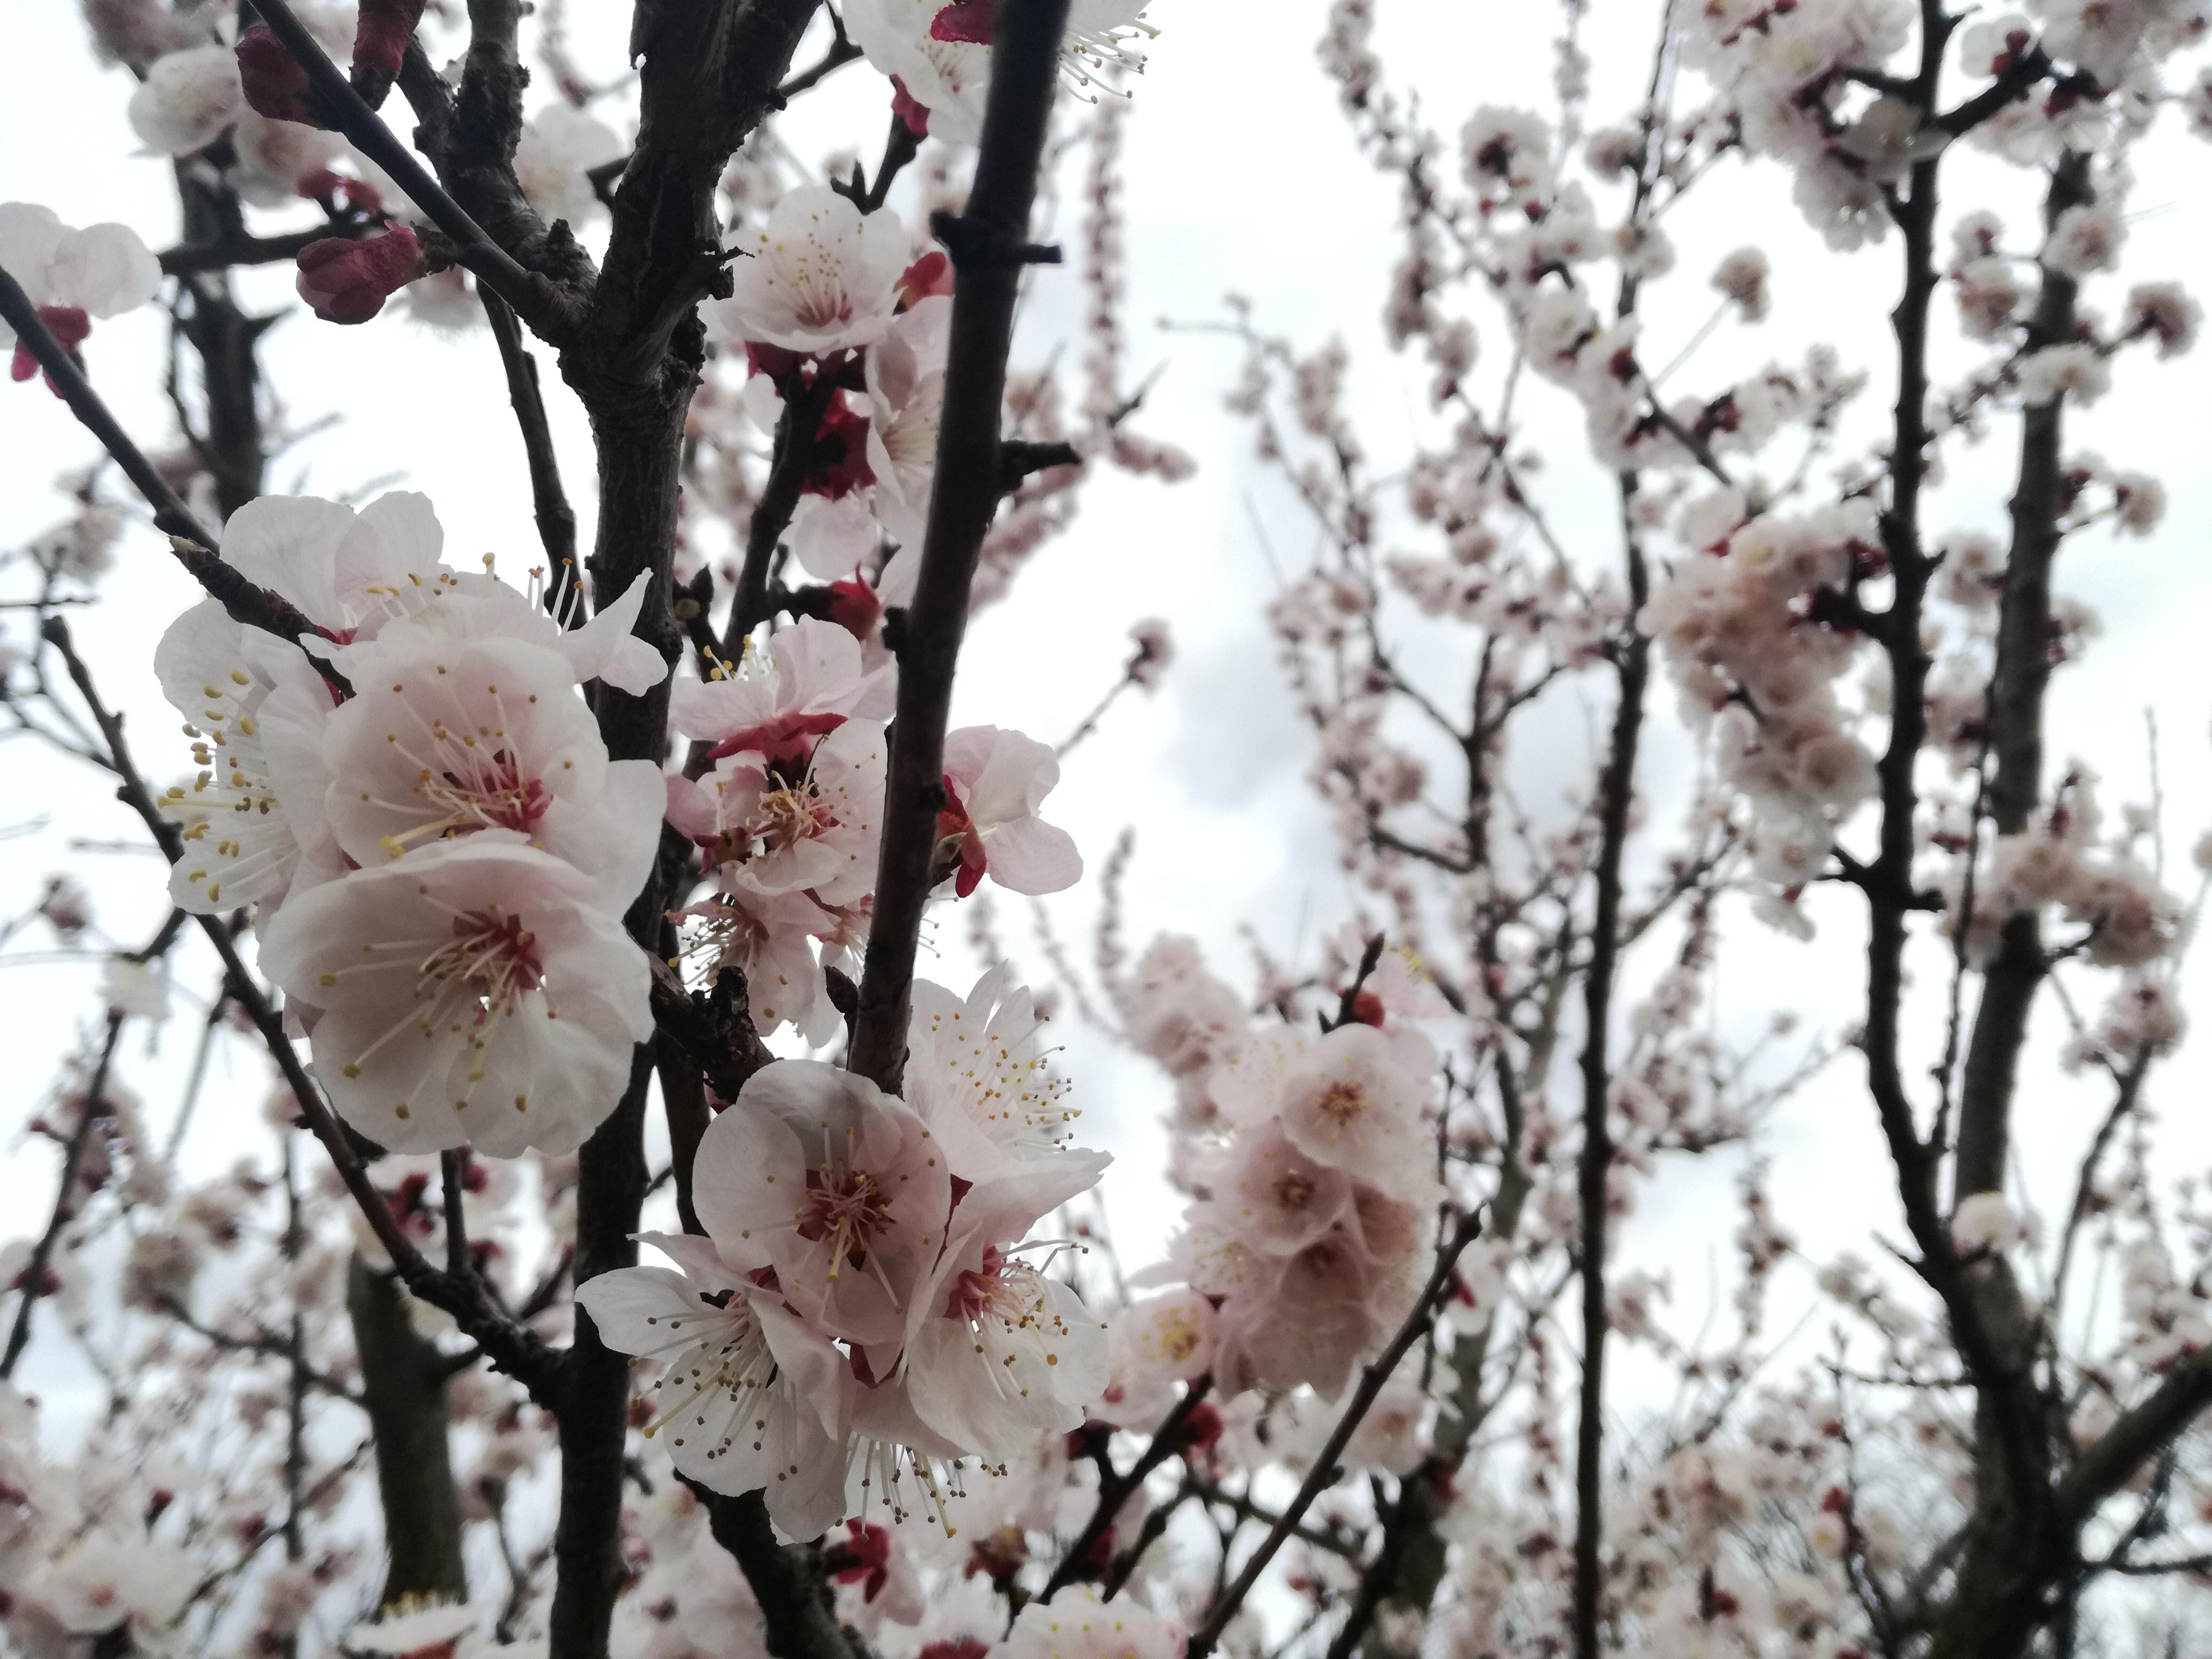 Gestern beim #spazieren gehen mit meinem #hund gesichtet ❤ #kirschblüten 